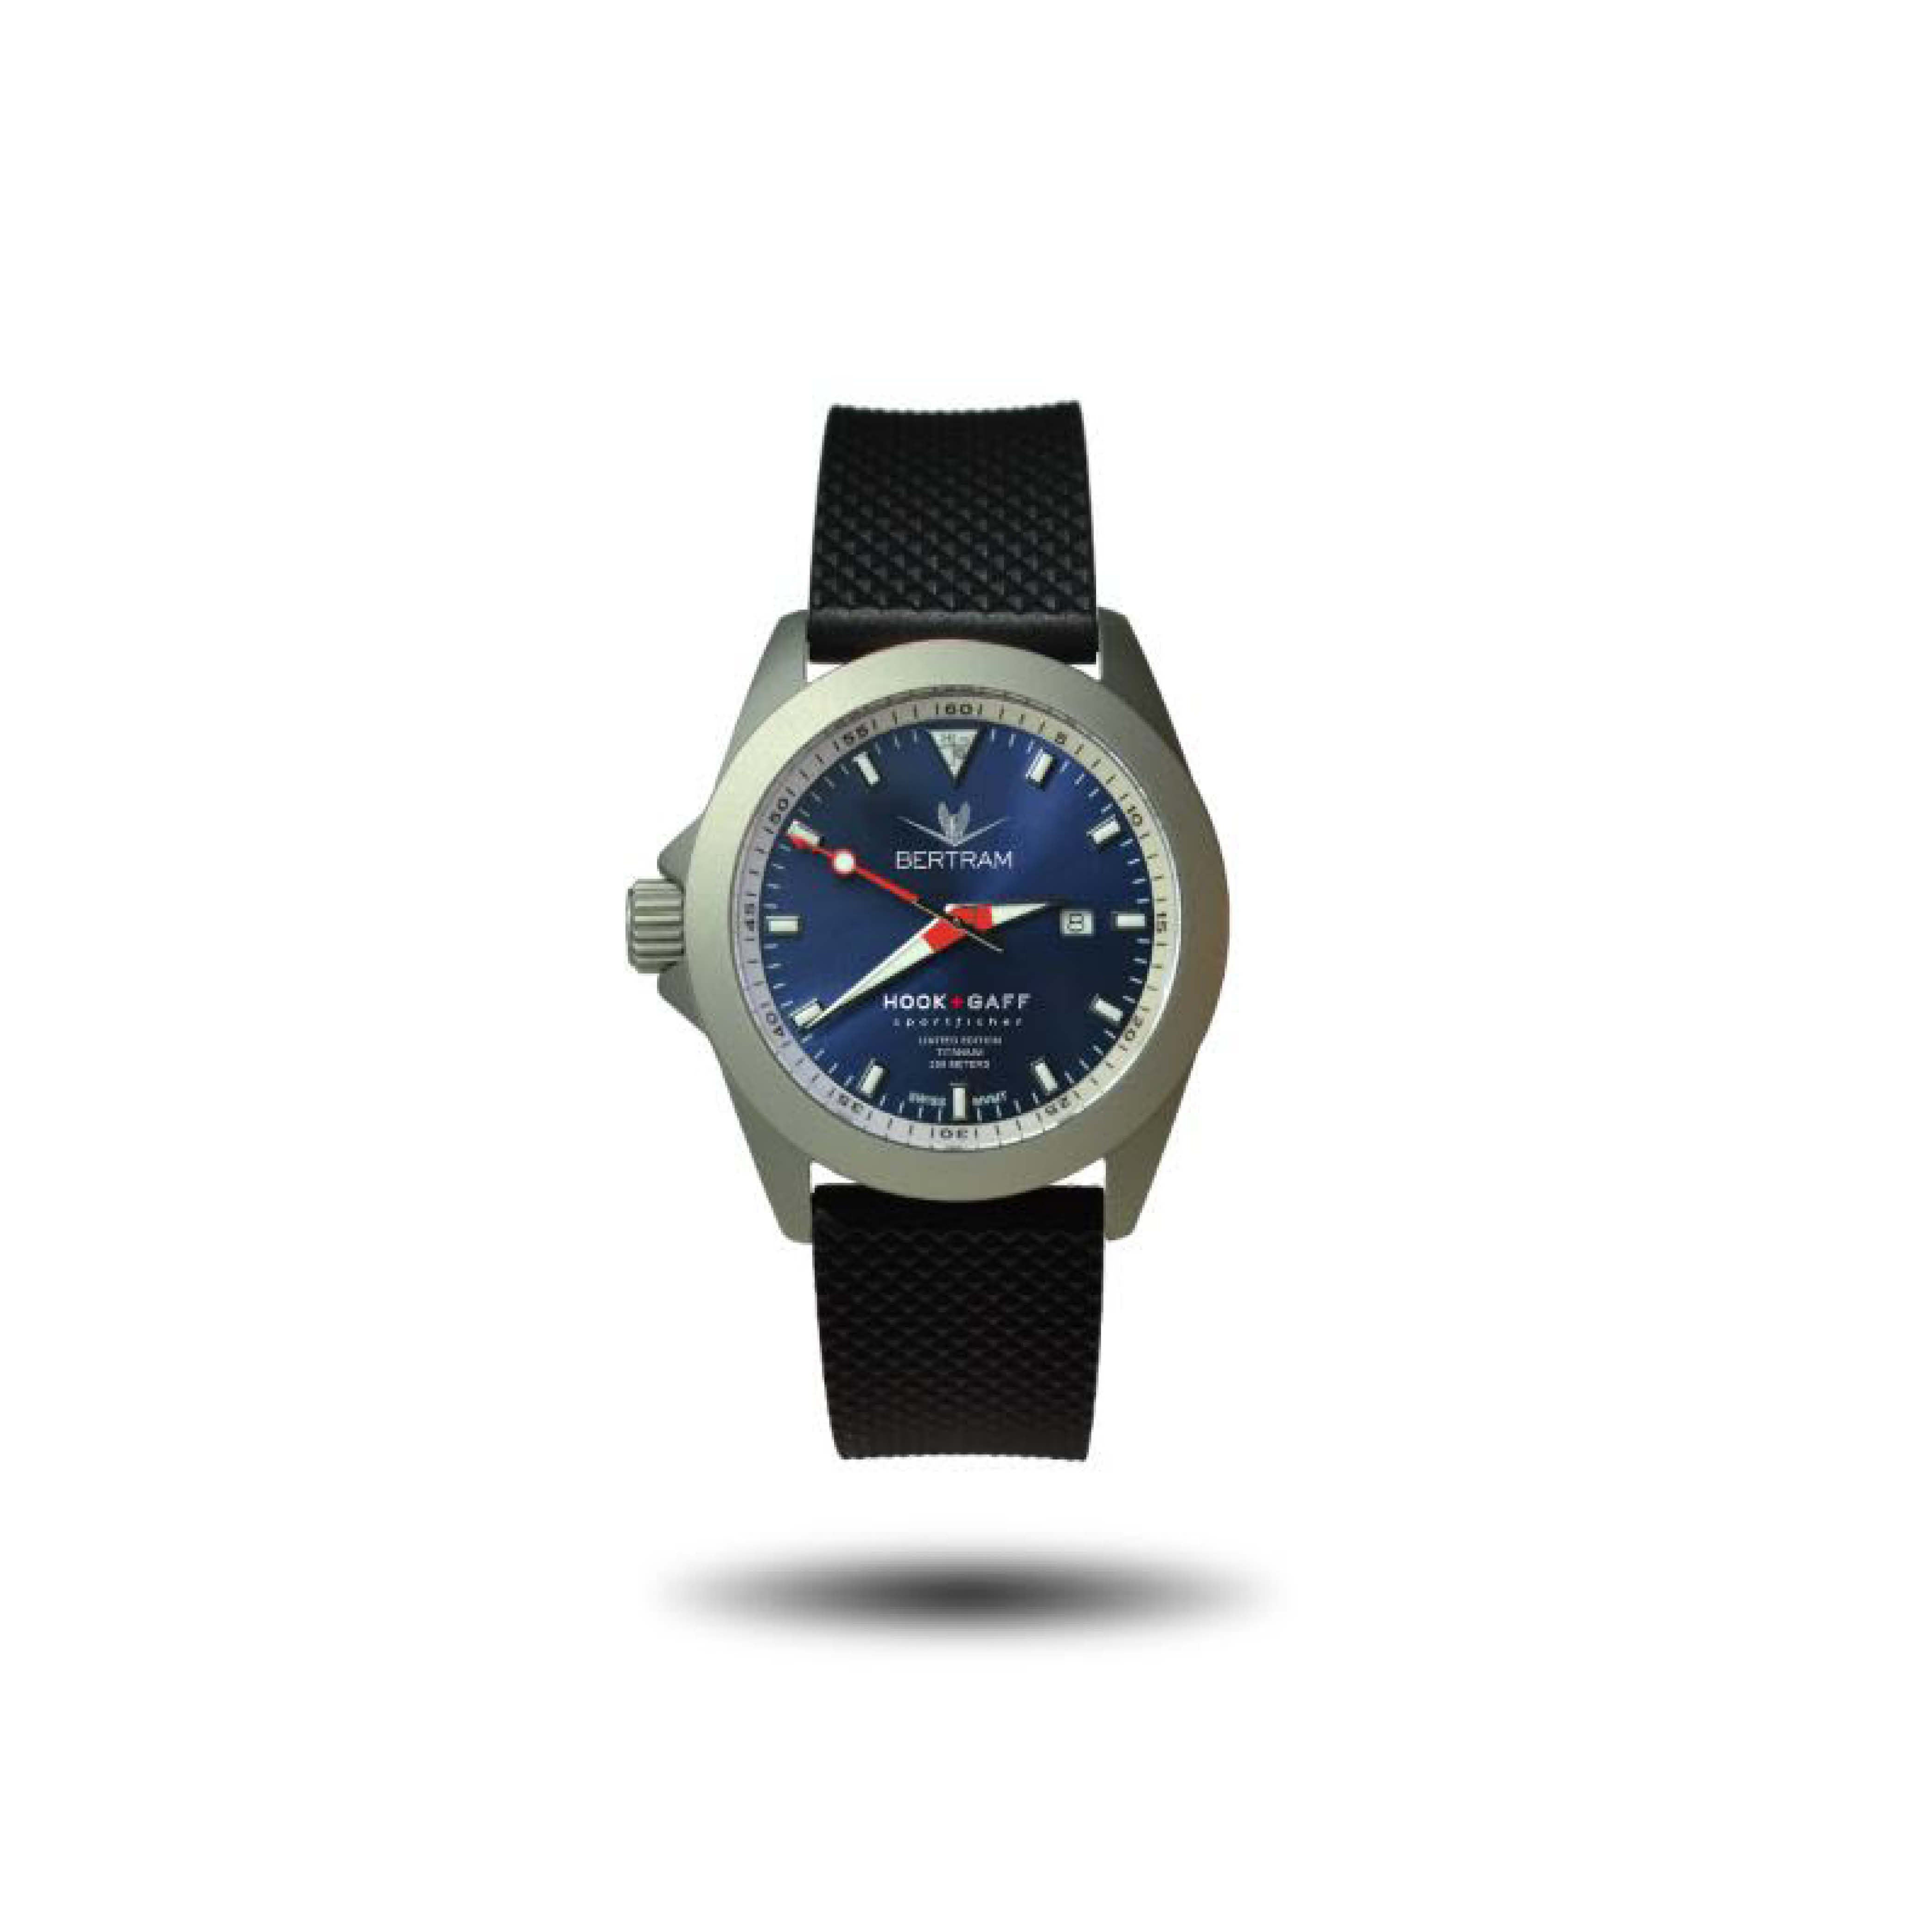 Sportfisher Black Watch with White Dial Woven G10 Khaki / White